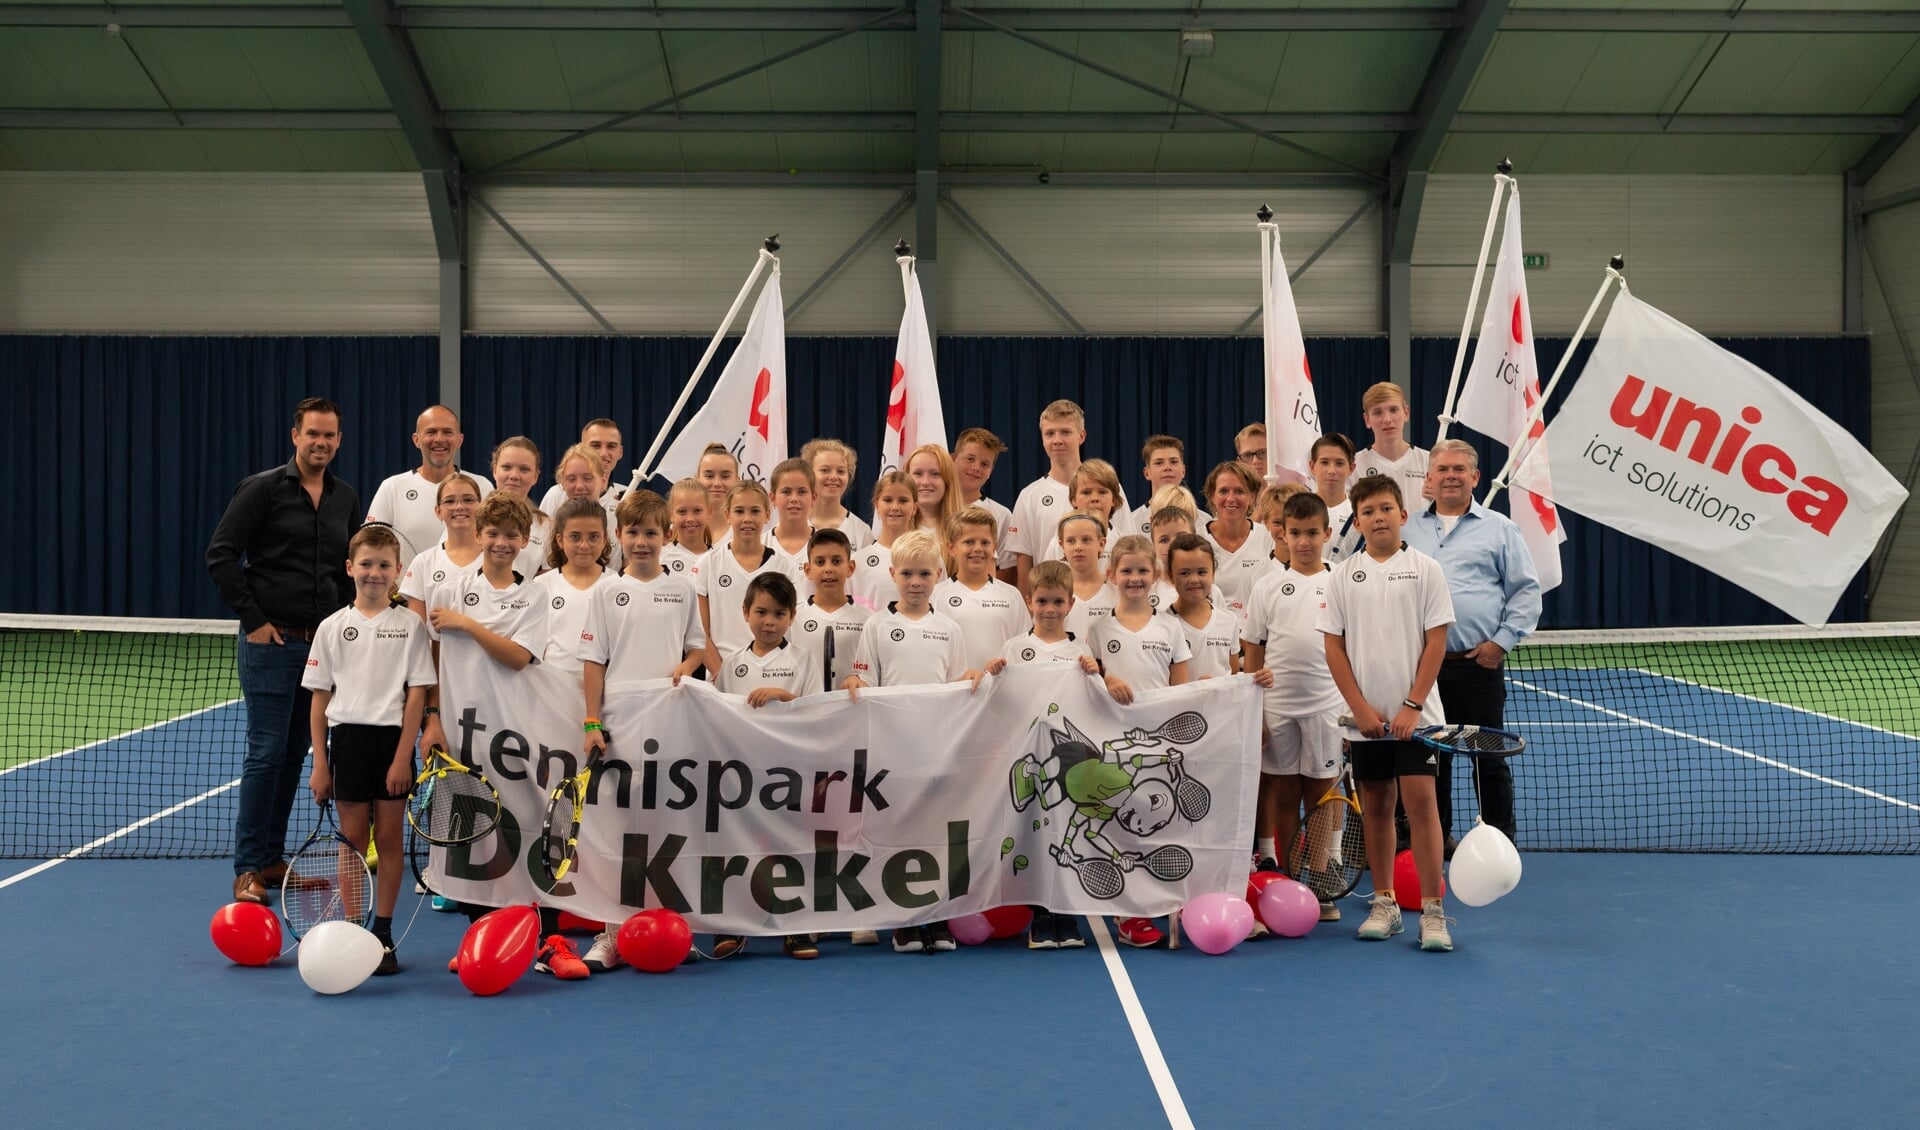 Unica ICT Solutions tekent voor hoofdsponsorschap
Tennis en Padel De Krekel.